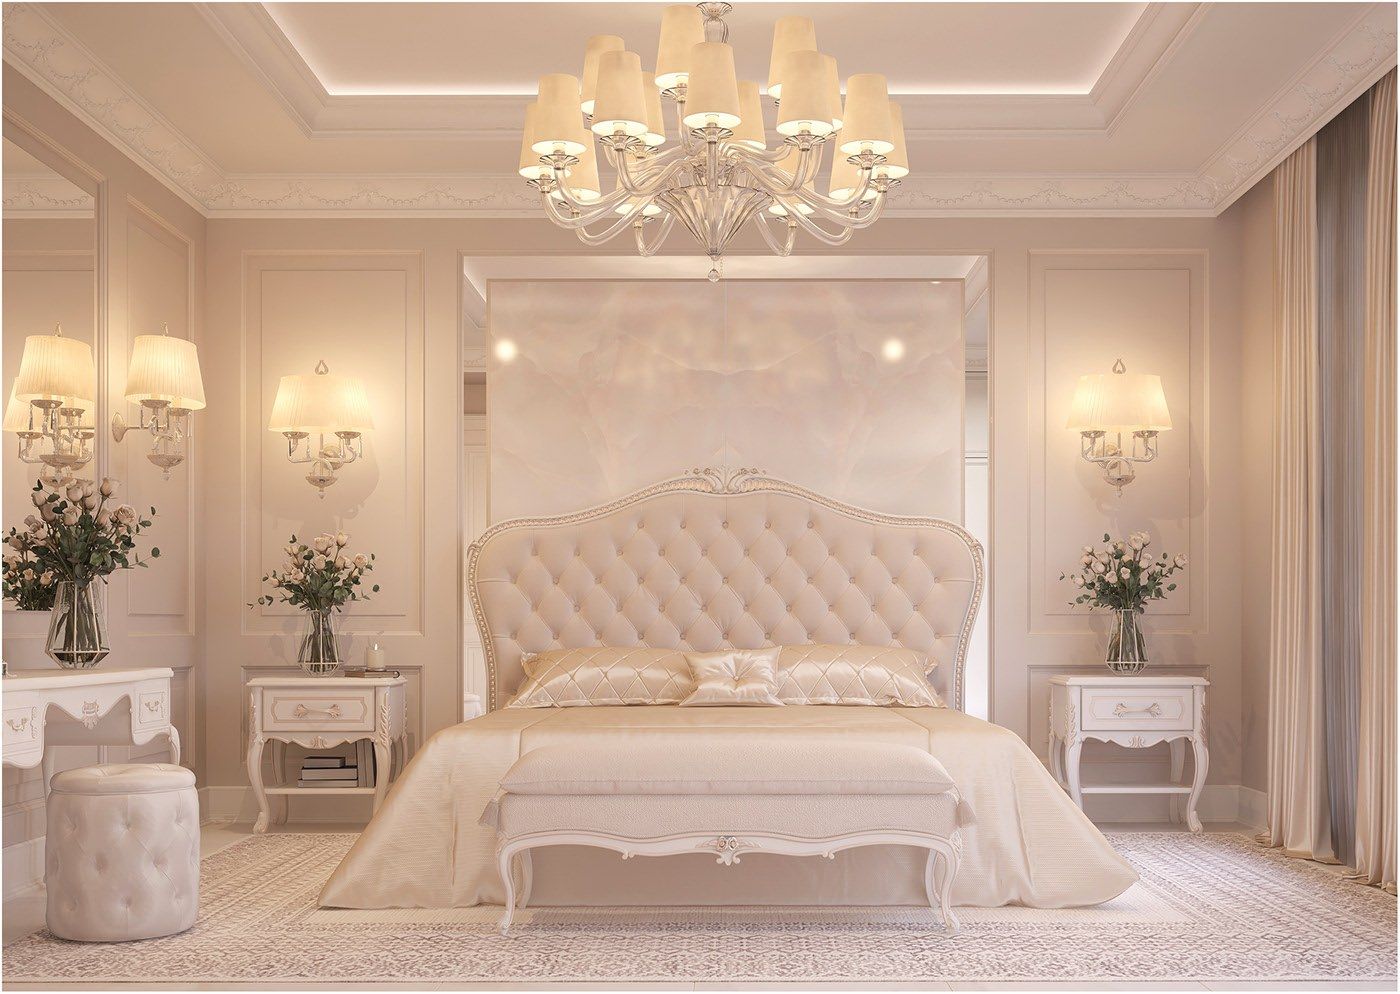 Sử dụng gam màu beige làm chủ đạo tạo sự trang nhã cho không gian phòng ngủ